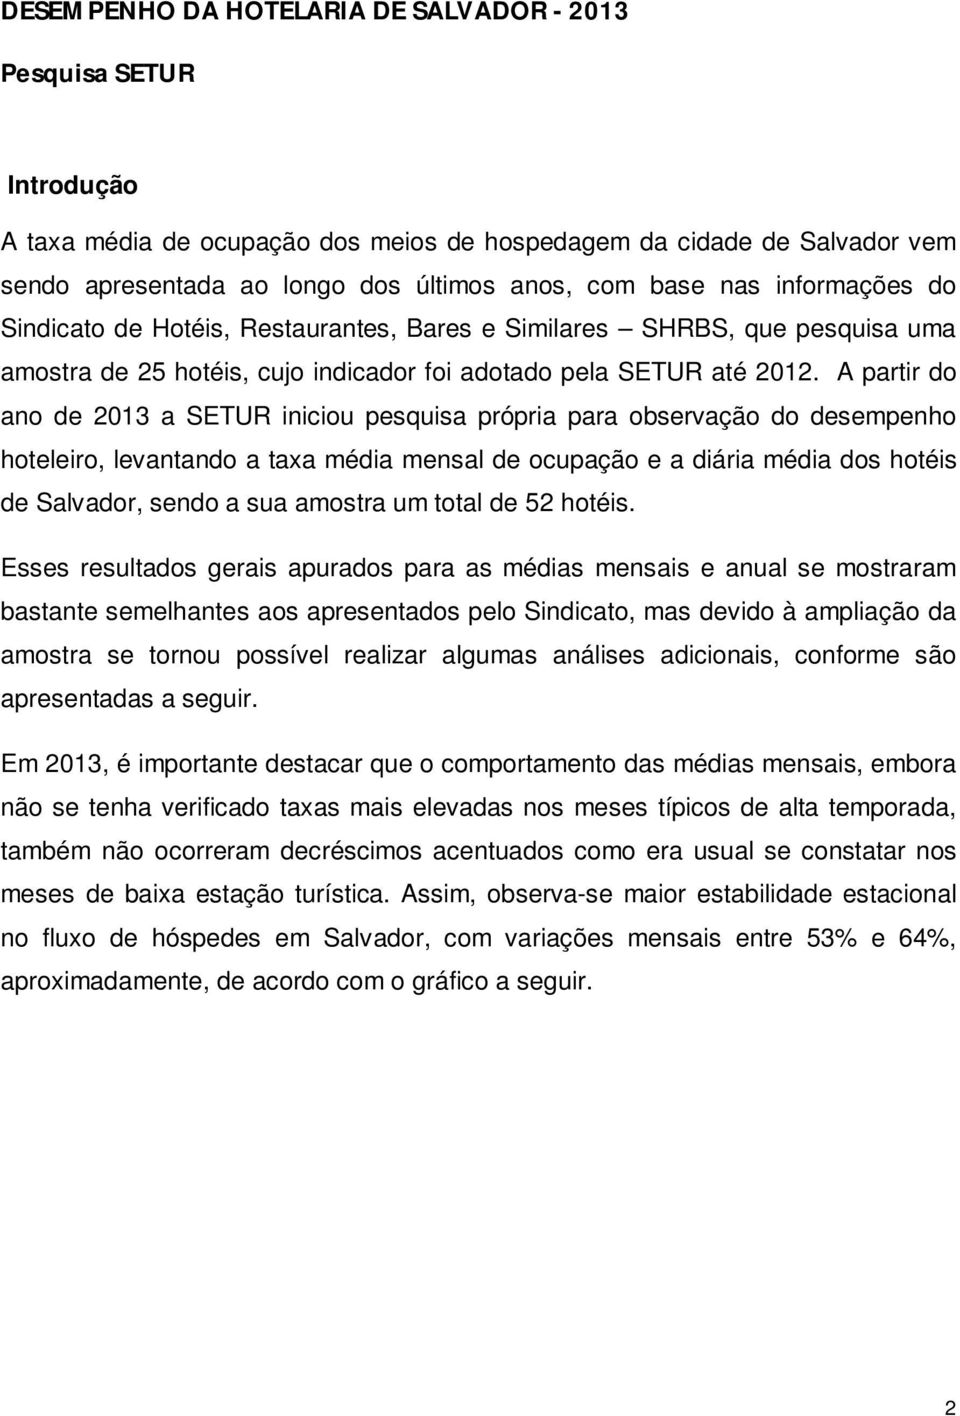 A partir do ano de 2013 a SETUR iniciou pesquisa própria para observação do desempenho hoteleiro, levantando a taxa média mensal de ocupação e a diária média dos hotéis de Salvador, sendo a sua